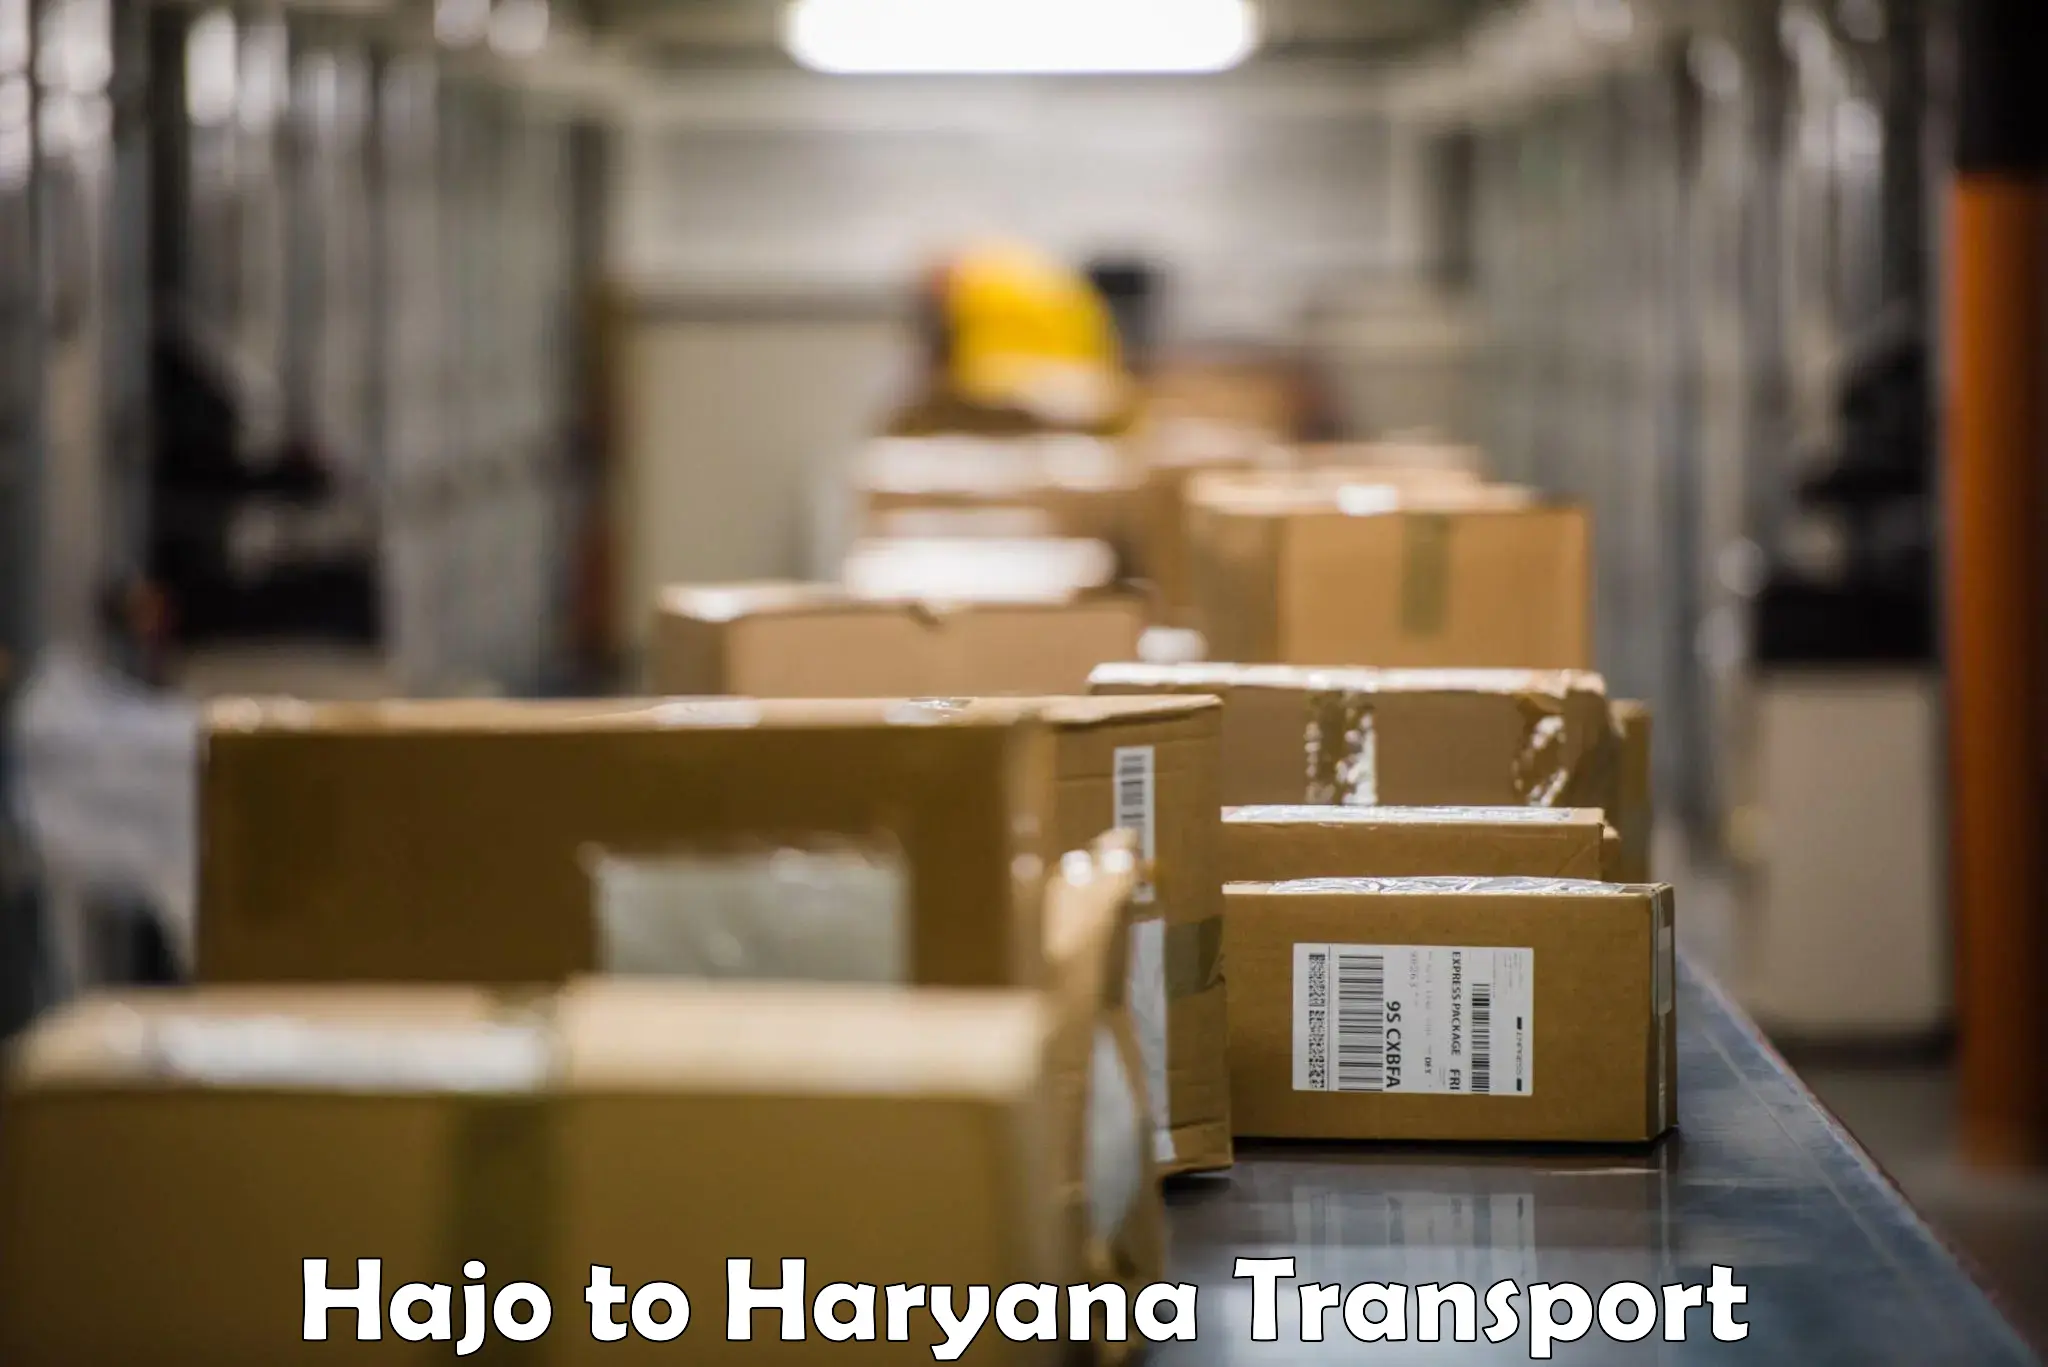 Transportation services Hajo to NCR Haryana